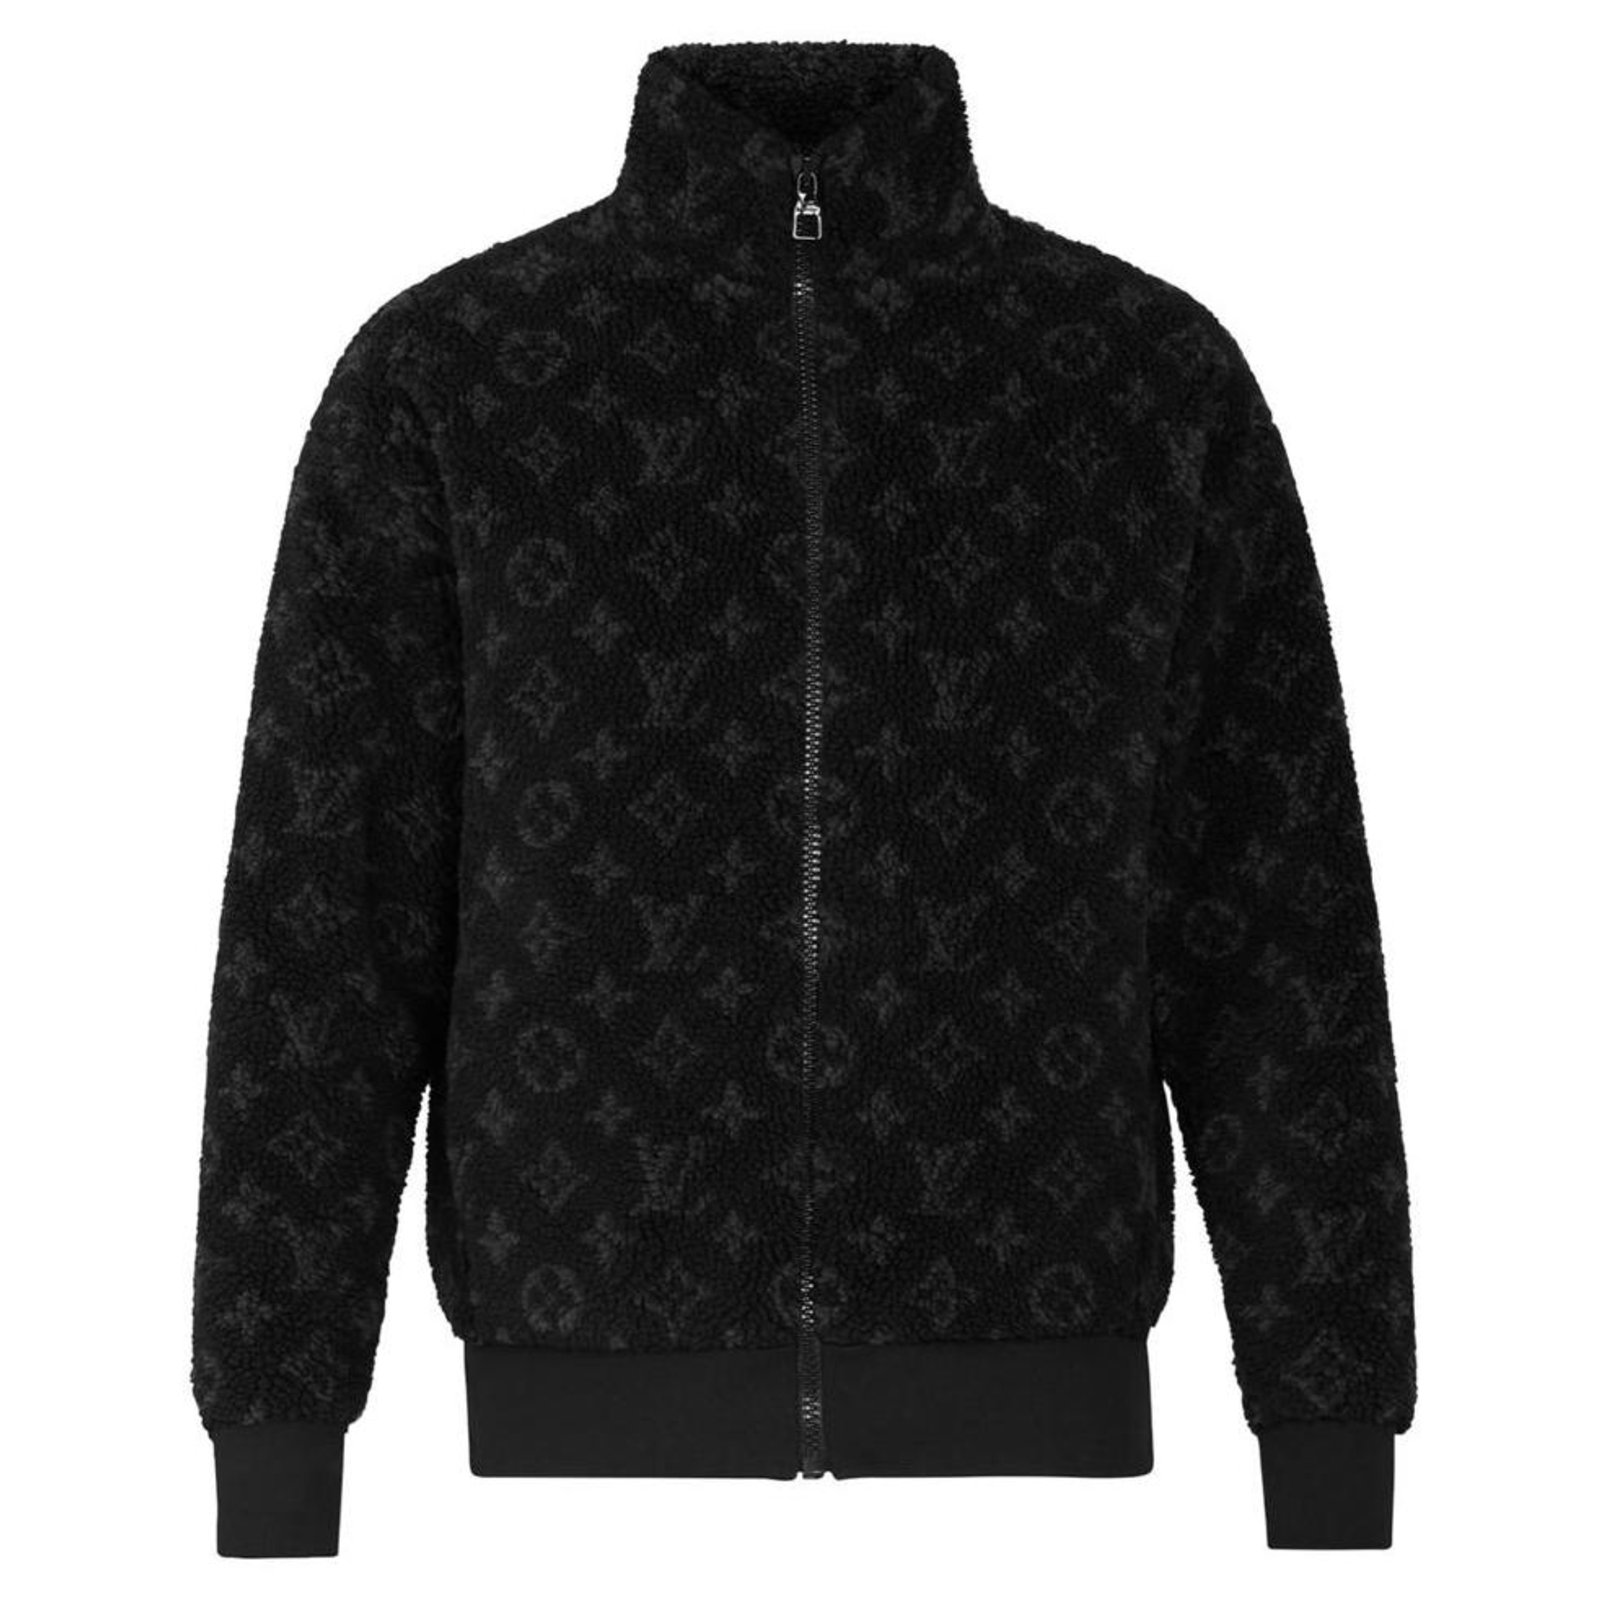 Louis Vuitton Jacken online kaufen